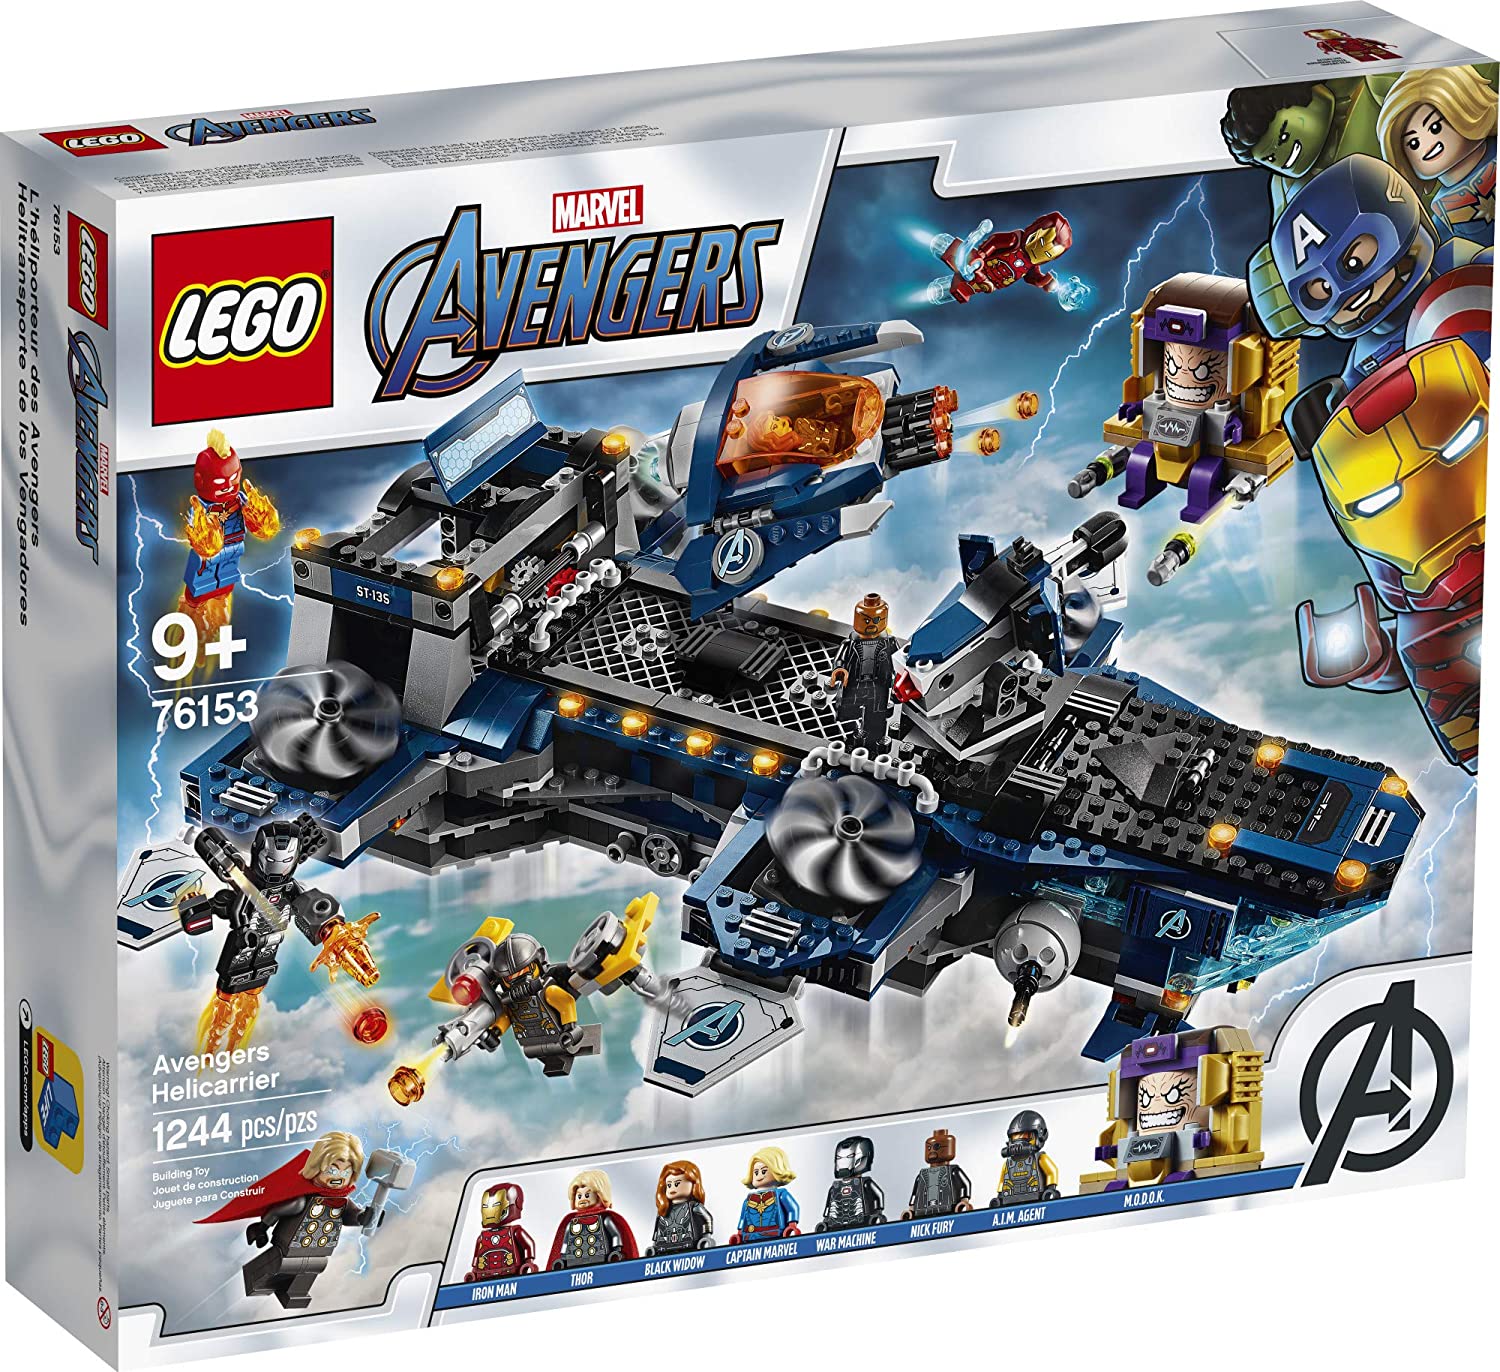 The New Lego Marvel Avengers Sky Mothership 76153 Đồ chơi khối xây dựng vui  nhộn với các nhân vật chuyển động của Marvel Avengers. Đây là món quà tuyệt  vời dành cho